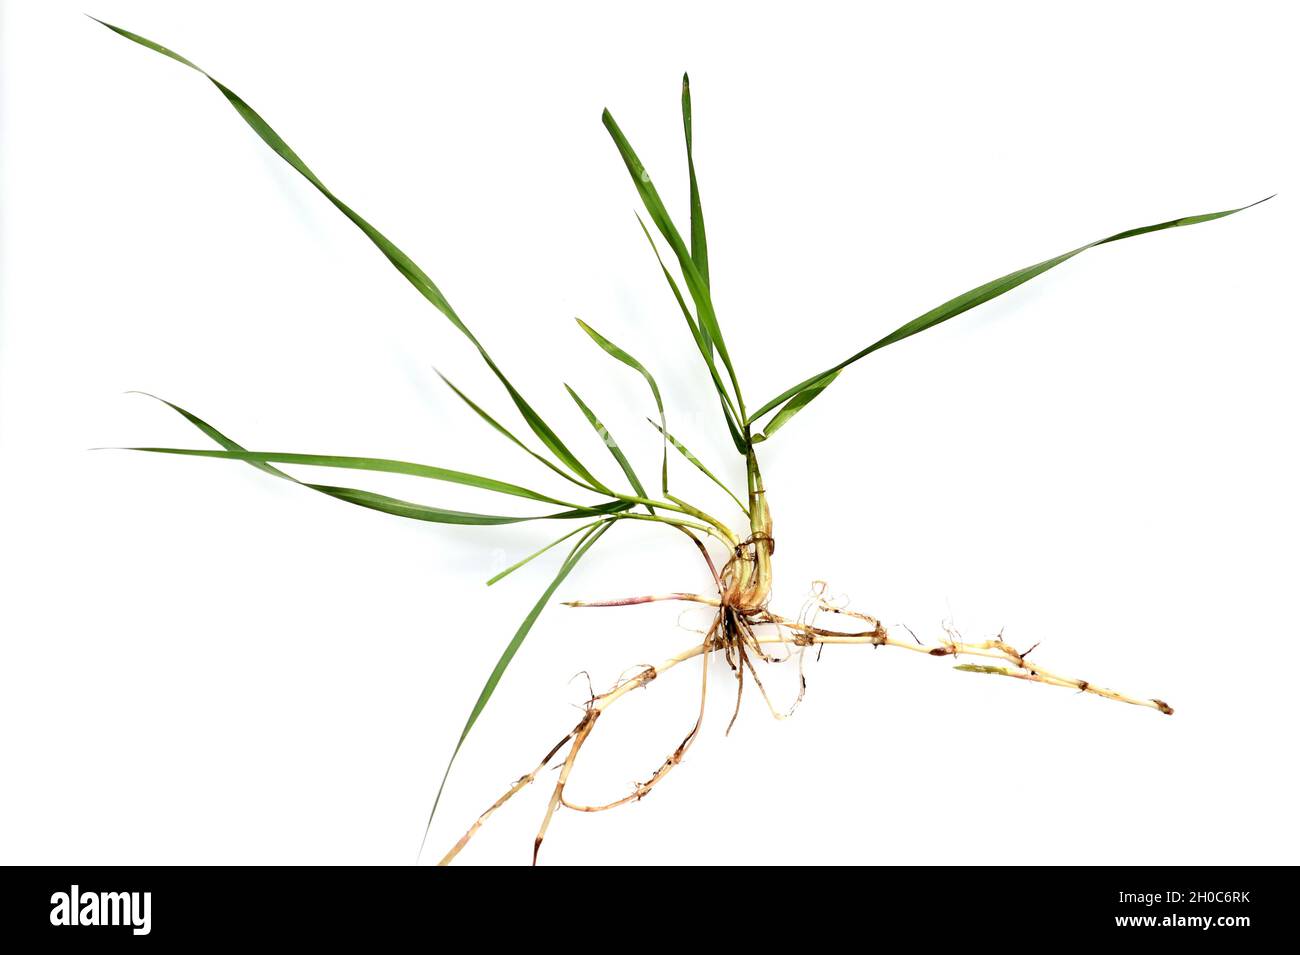 Quecke, Agropyron repens ist eine wichtige Heil- und Arzneipflanze. Quecke ist ein Gras und Unkraut. Couch, Agropyron repens, ist ein wichtiges Medikament Stockfoto